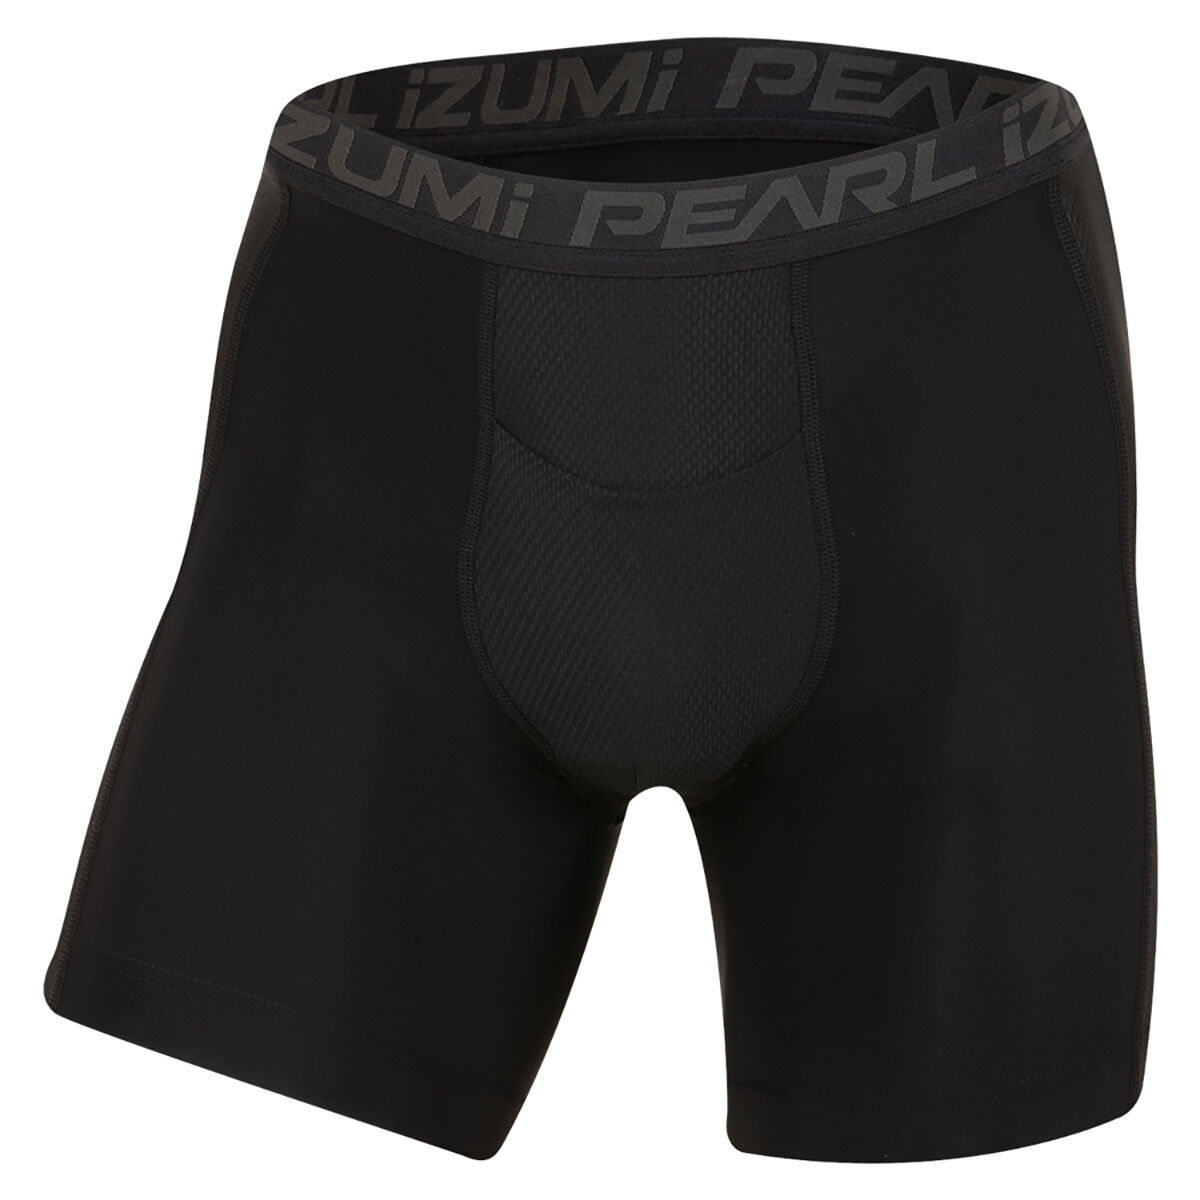 Pearl Izumi Minimal - Ropa interior ciclismo - Hombre